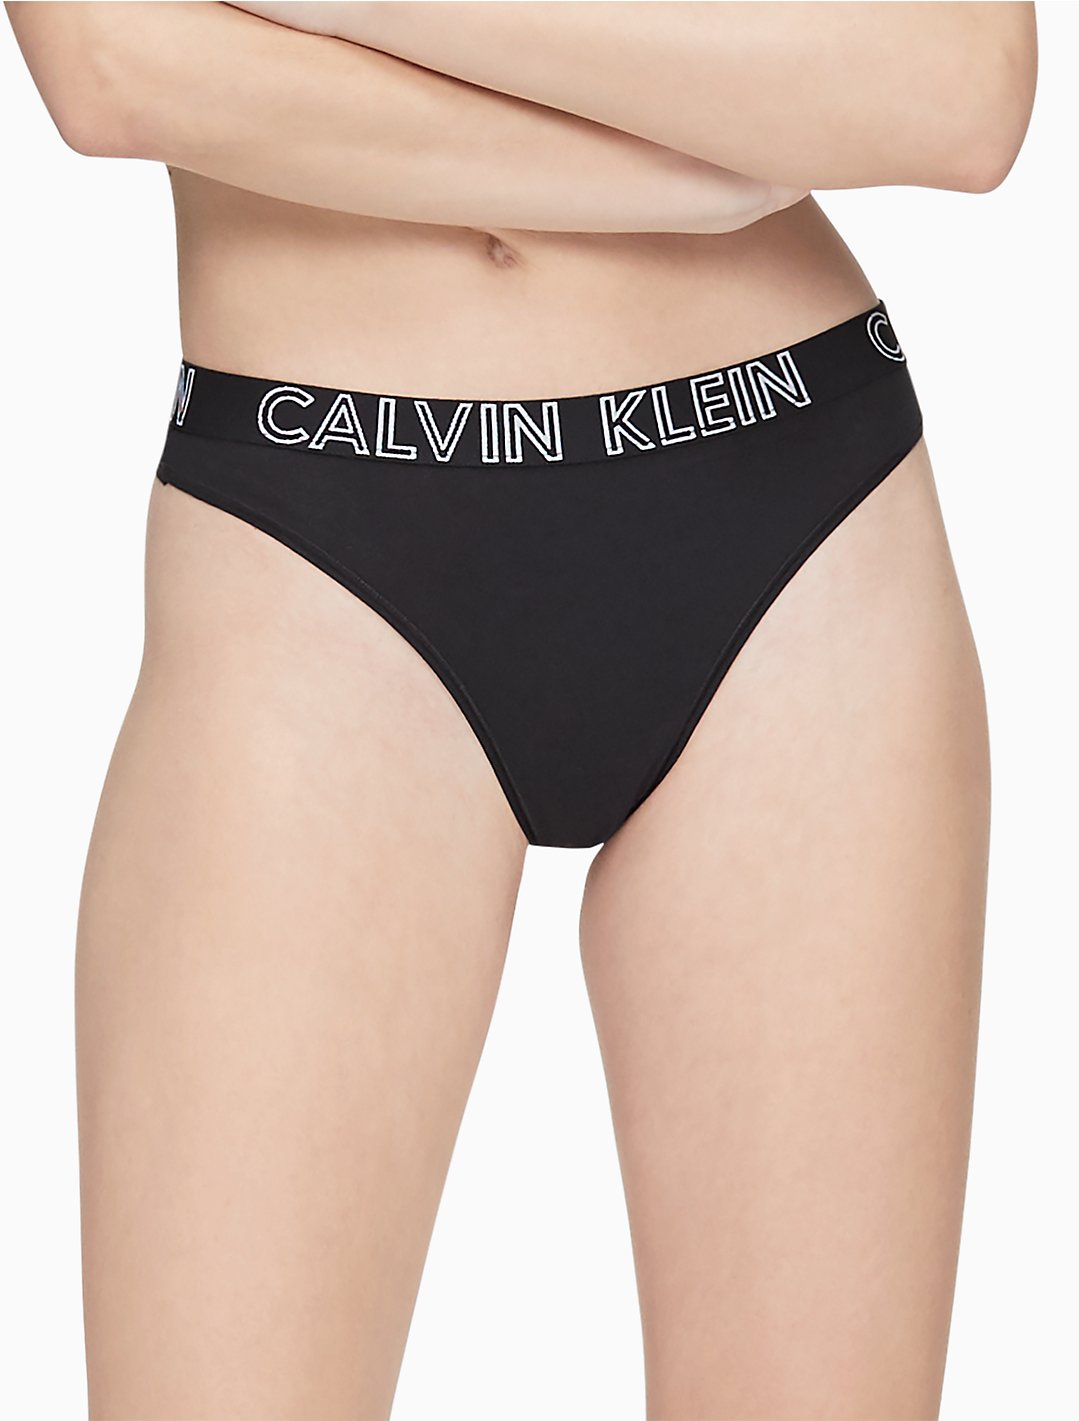 Ultimate Cotton Thong | Calvin Klein® USA